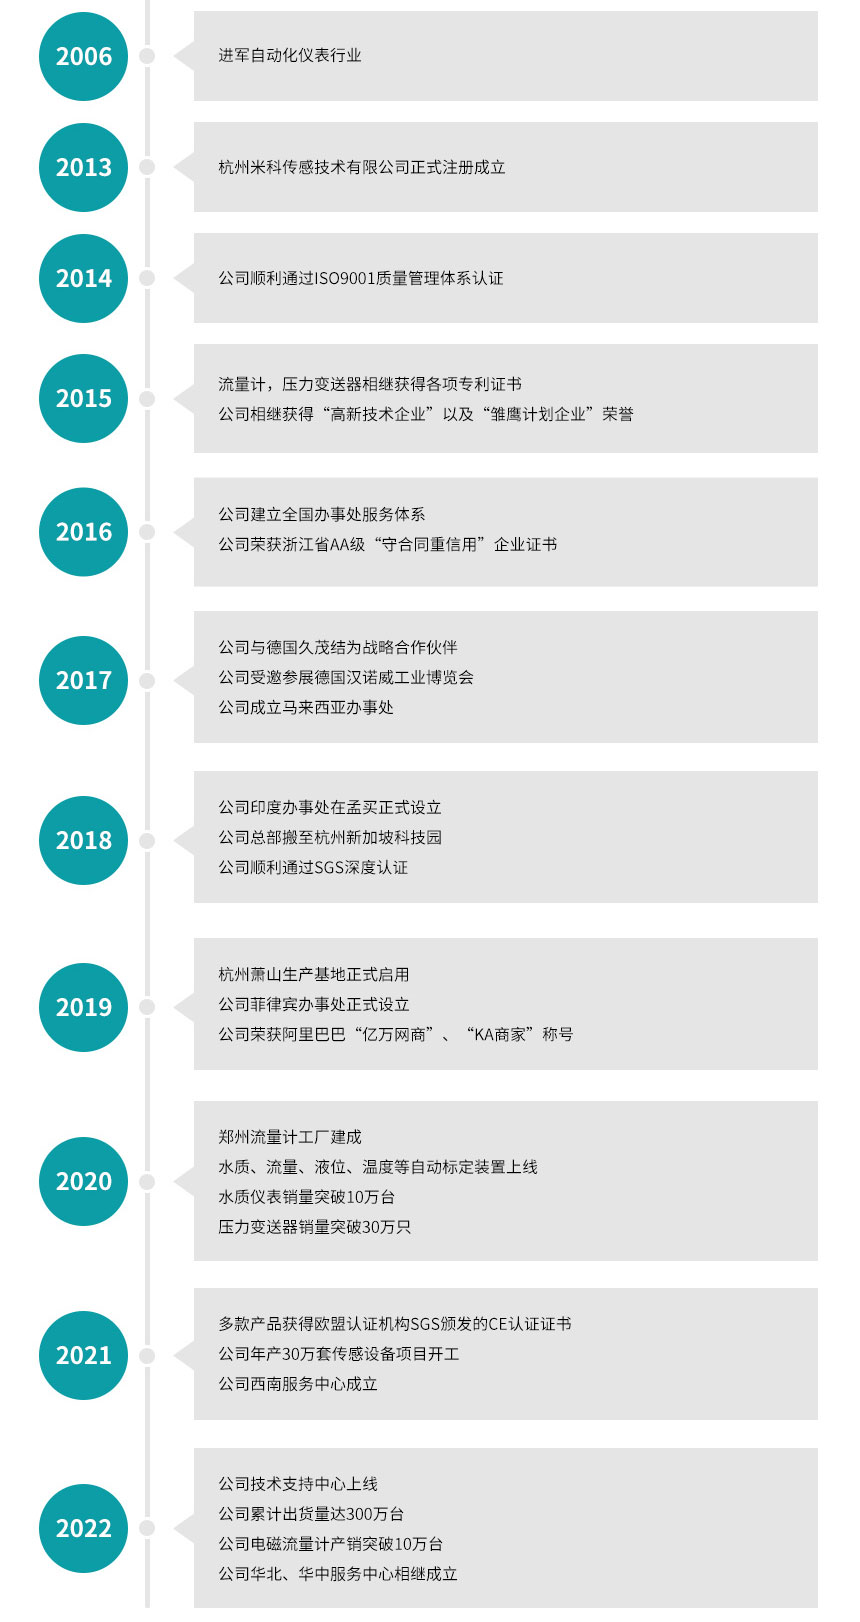 杭州米科传感技术有限公司发展历程